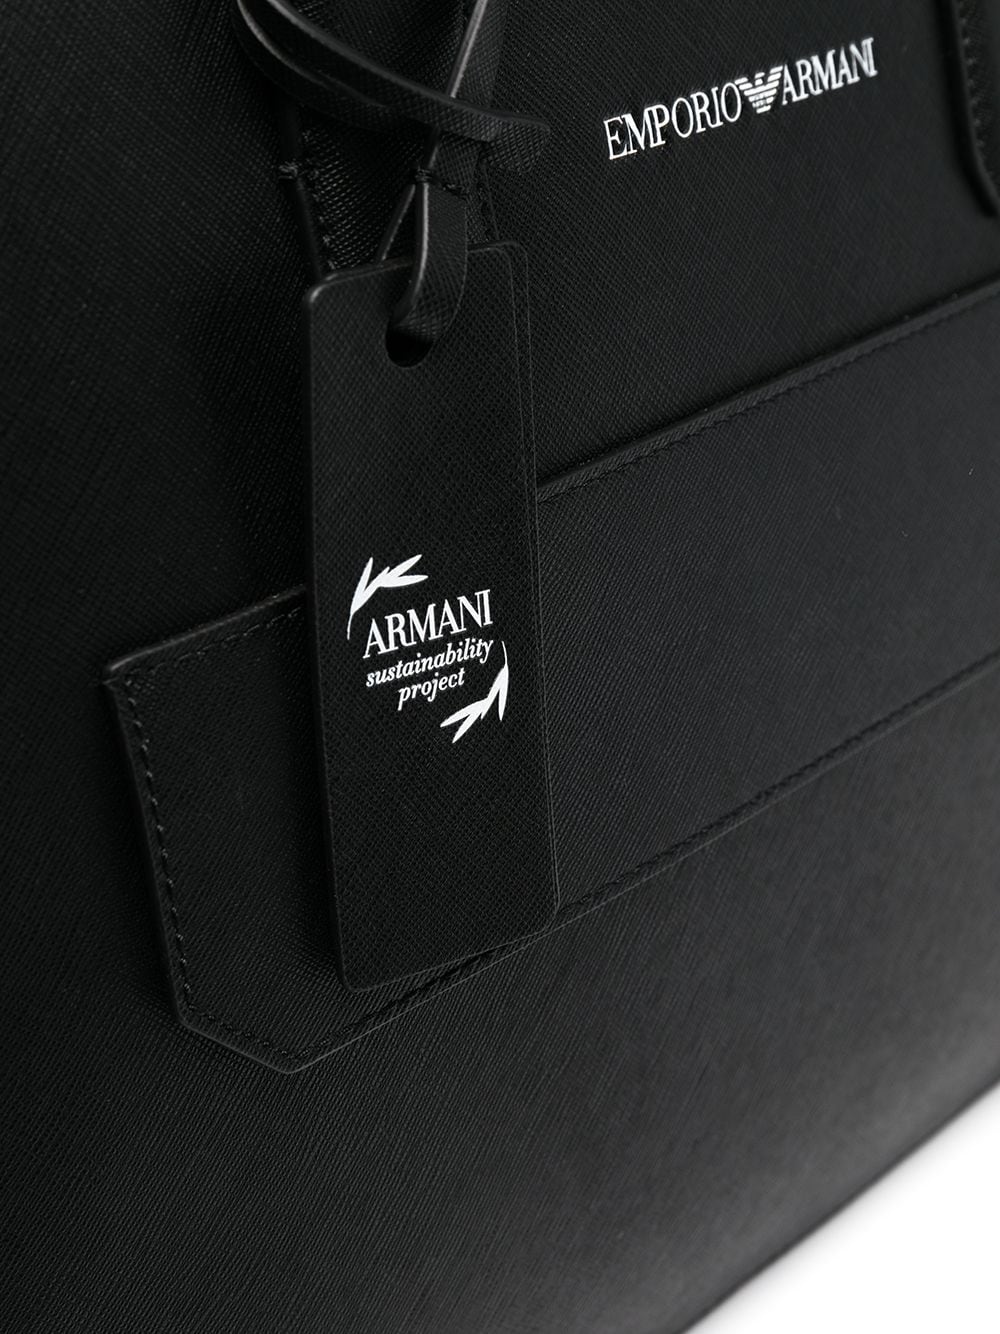 фото Emporio armani портфель с логотипом